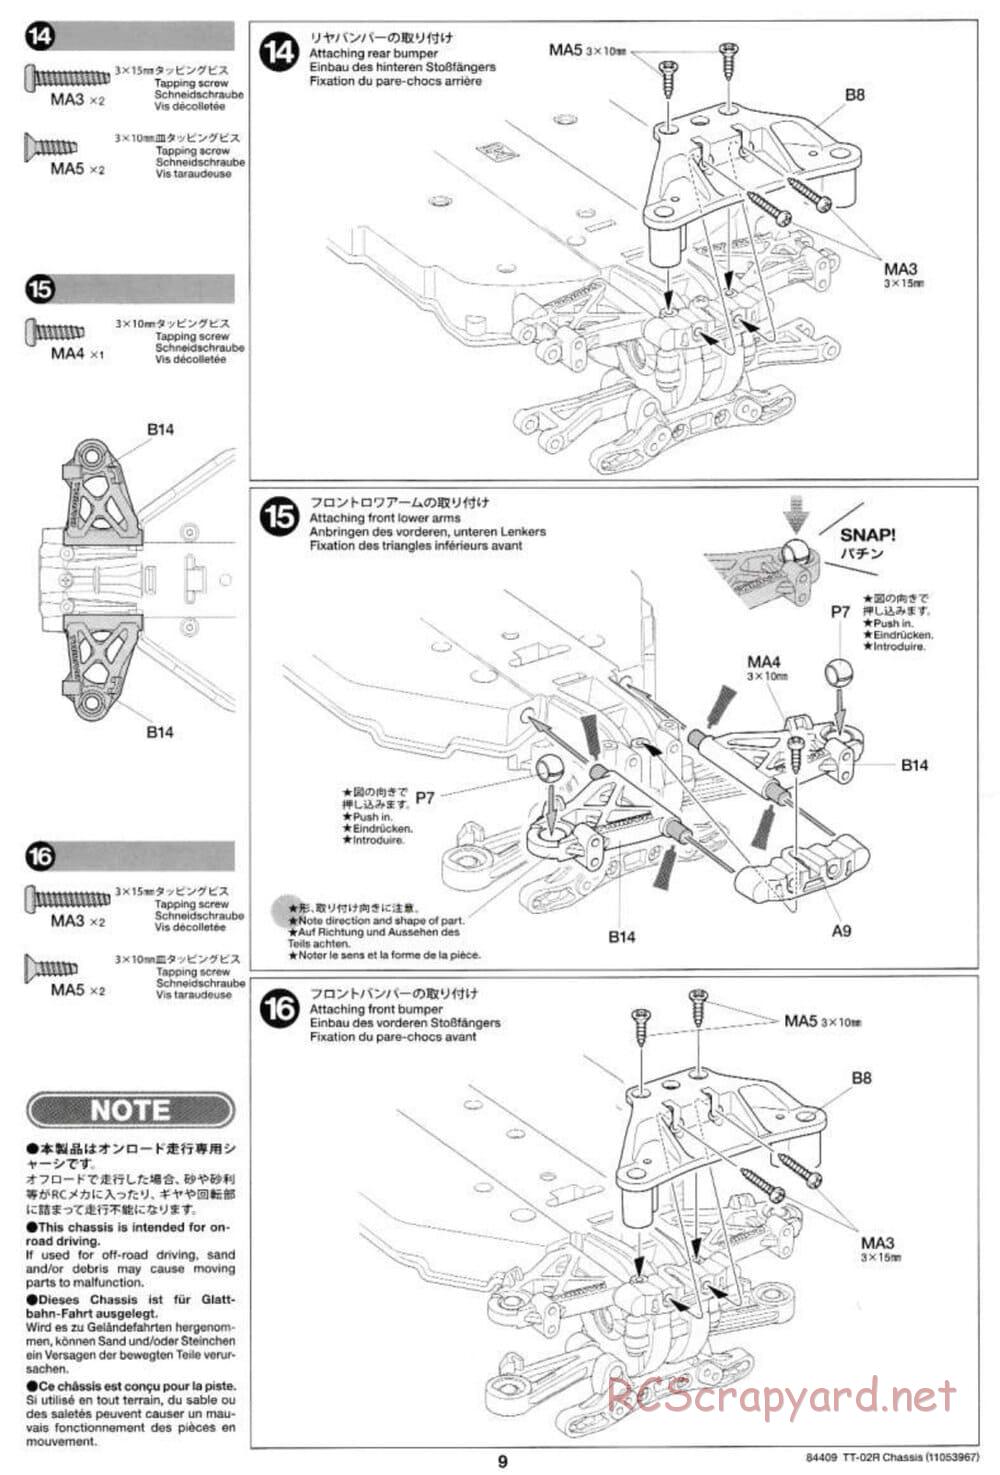 Tamiya - TT-02R Chassis - Manual - Page 9